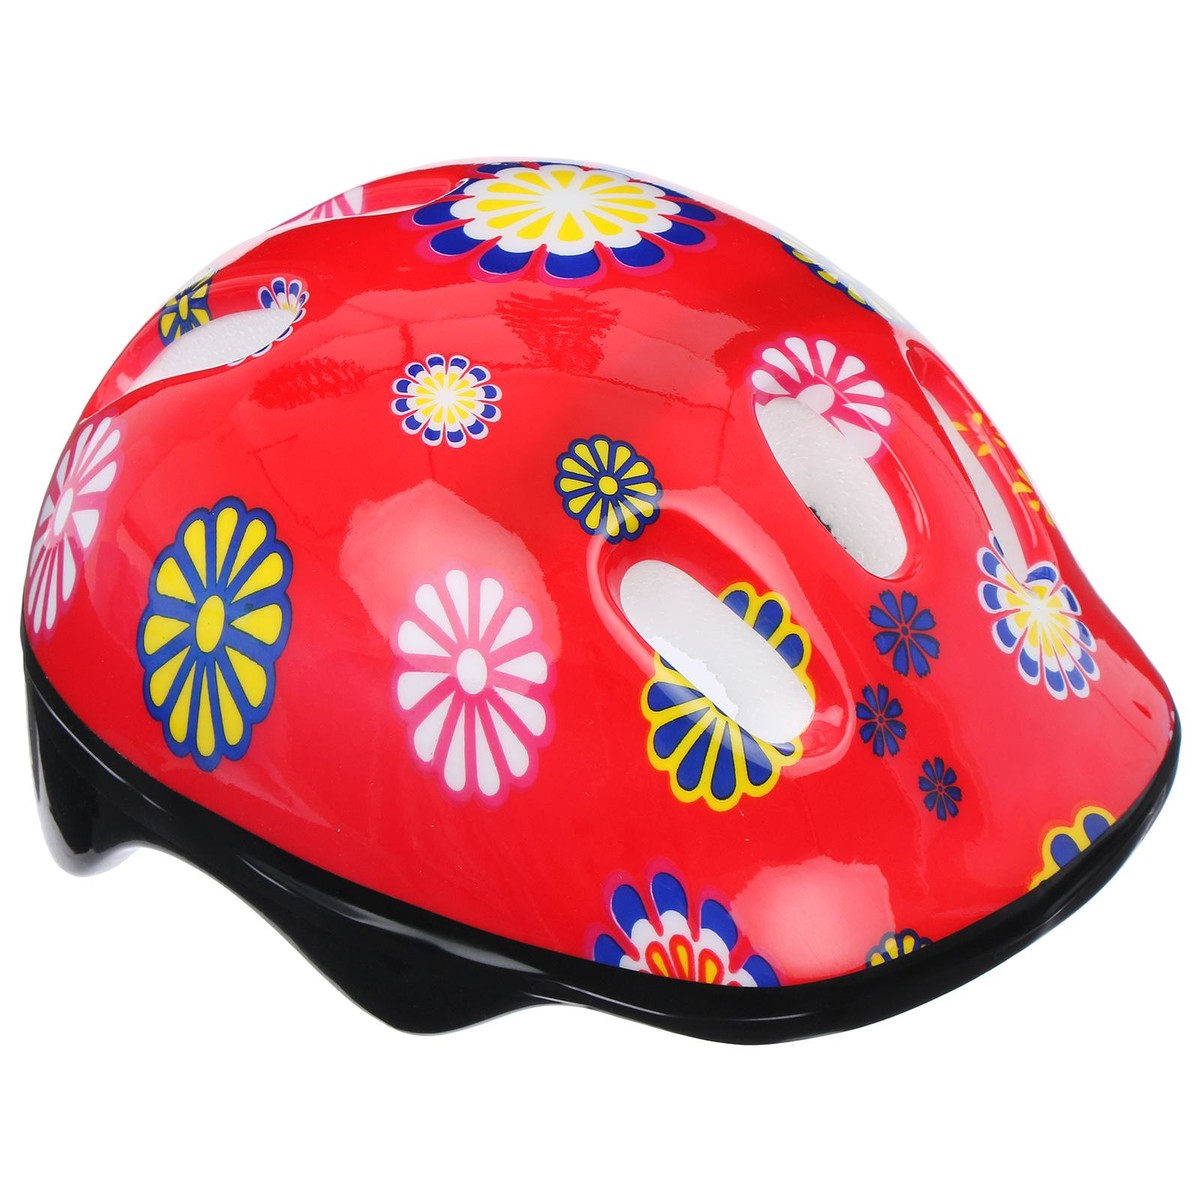 Шлем защитный детский onlytop ot-sh6, обхват 52-54 см, цвет красный шлем детский lassie р s цв фиолетовые полосы 718729 4921 s